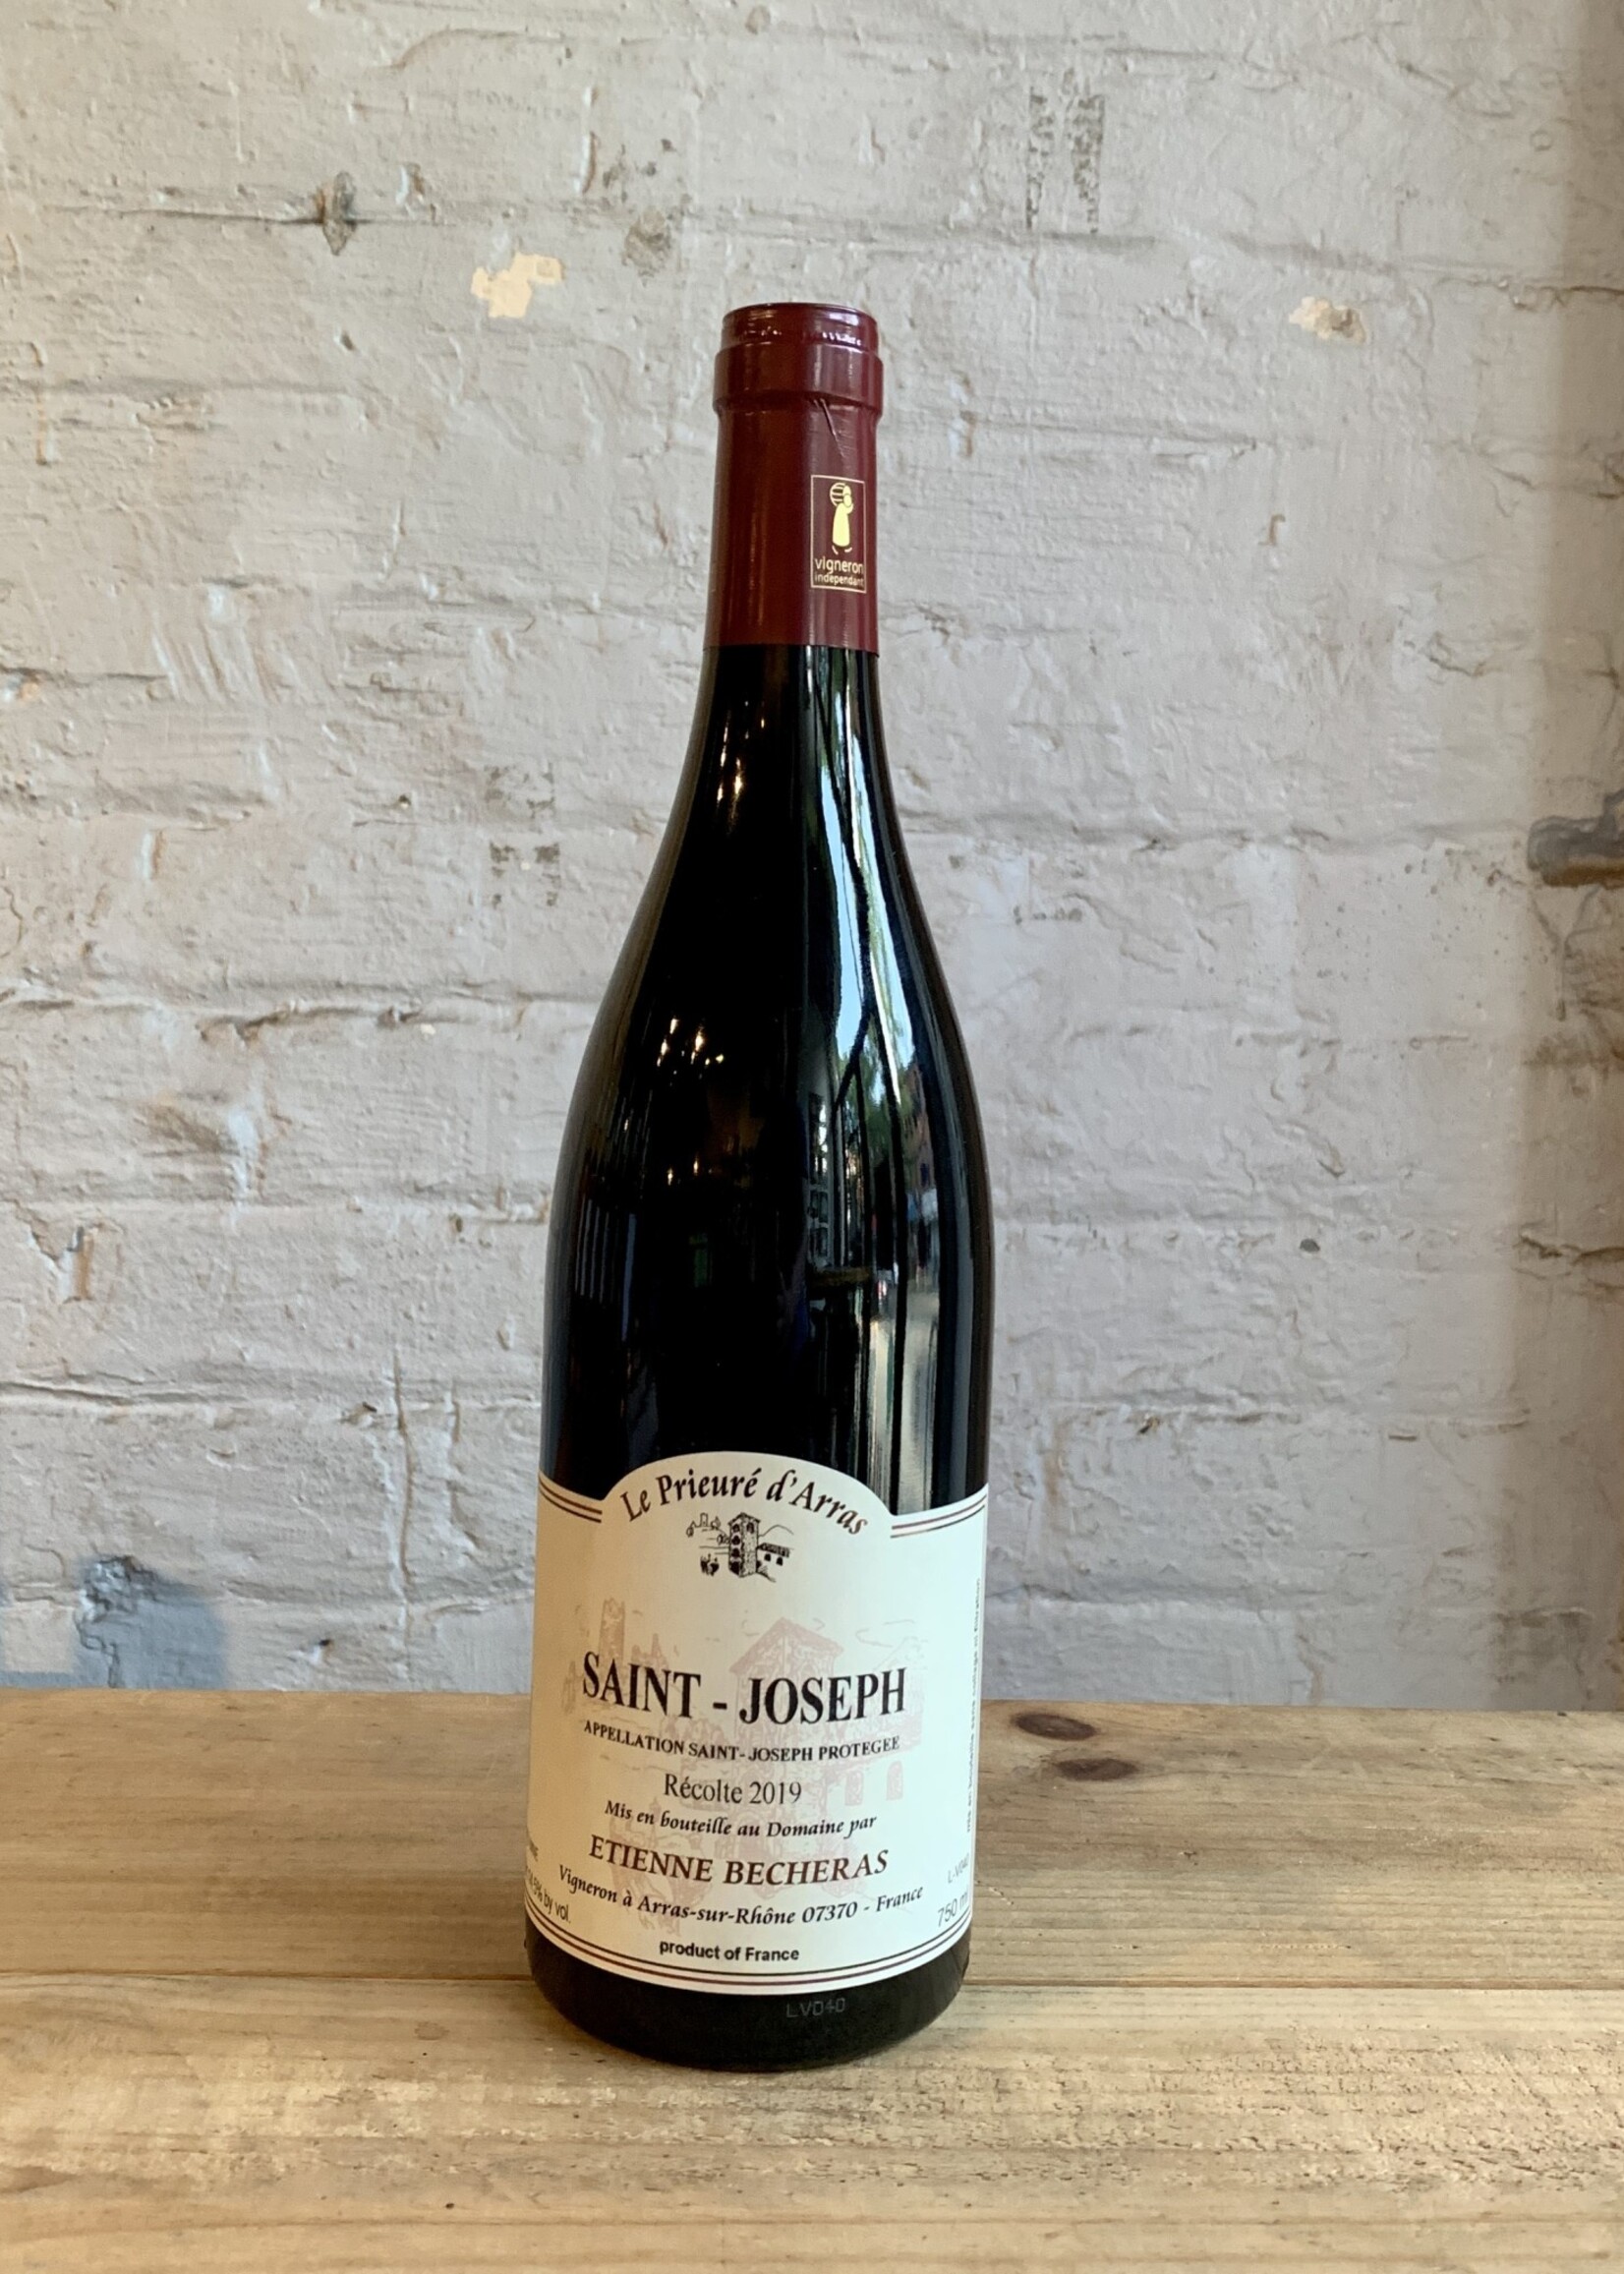 Wine 2019 Etienne Becheras Le Prieuré d'Arras Saint-Joseph - Rhone Valley, France (750ml)